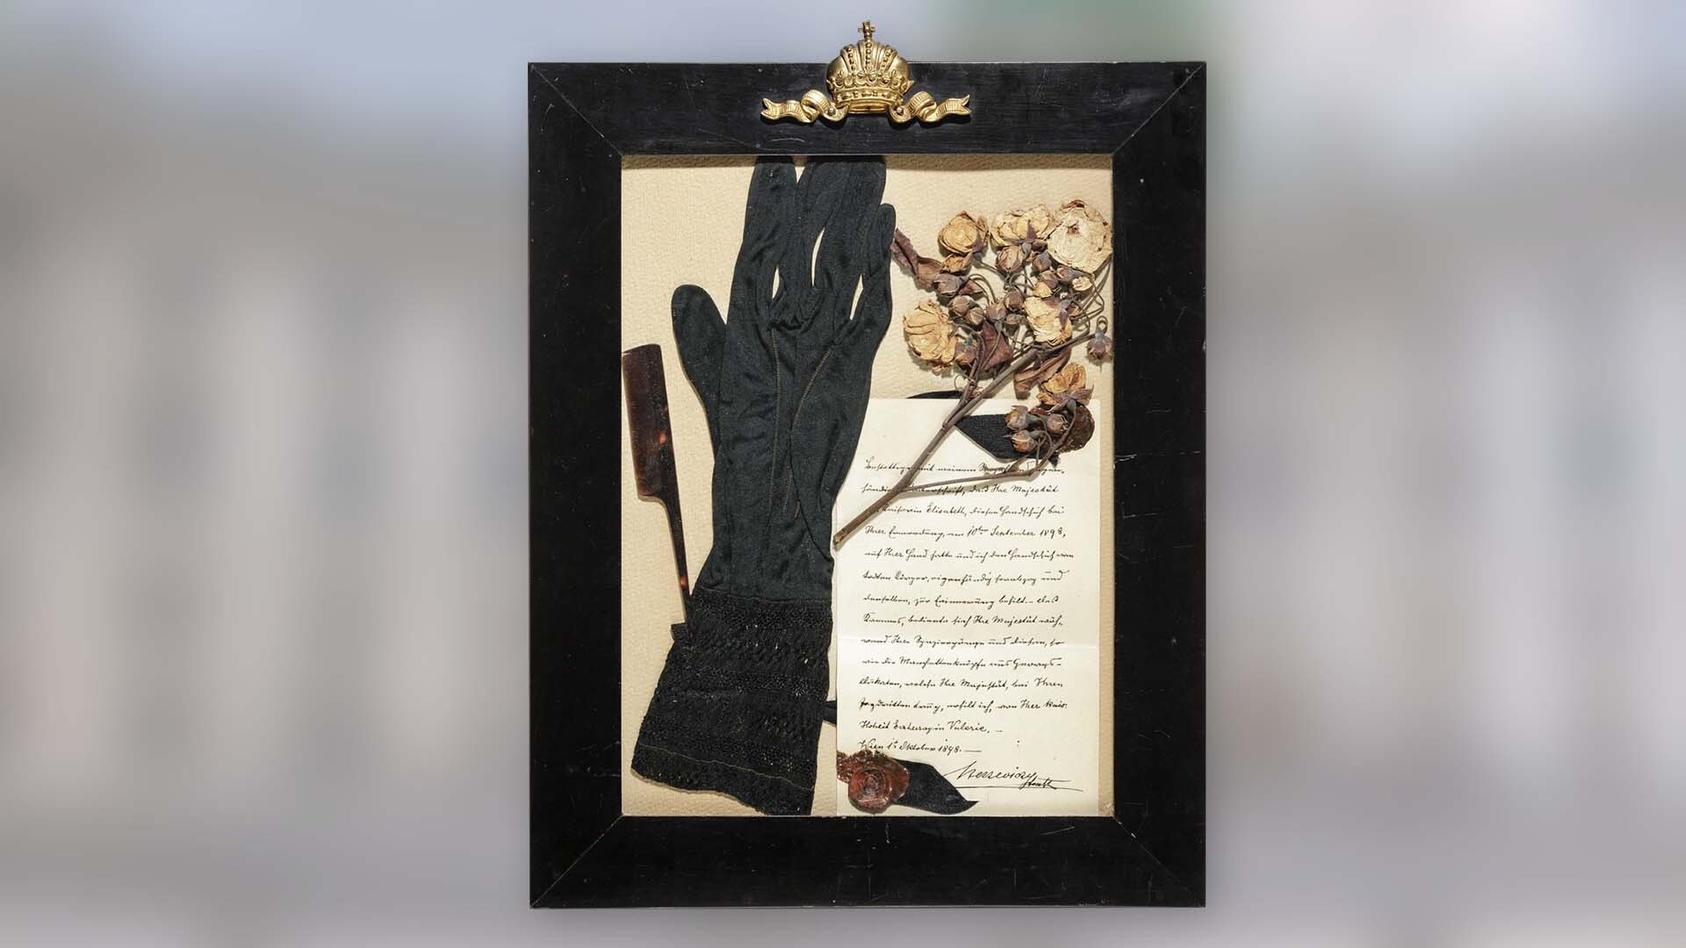 Diesen Handschuh soll die Kaiserin von Österreich am Tag ihrer Ermordung getragen haben.